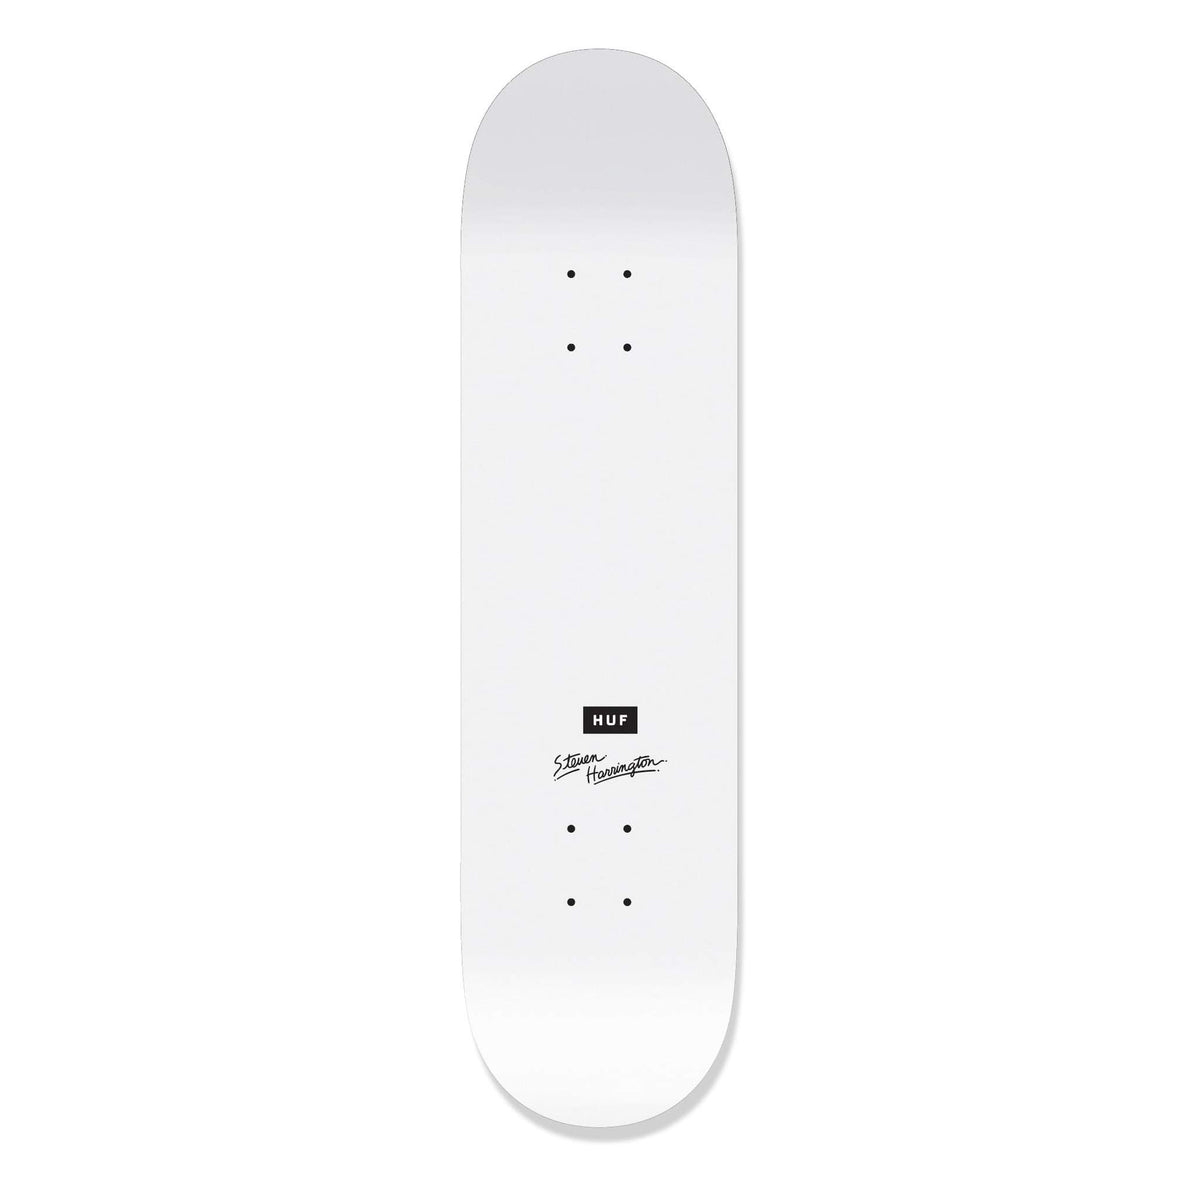 HUF x Steven Harrington Skateboard Deck, White